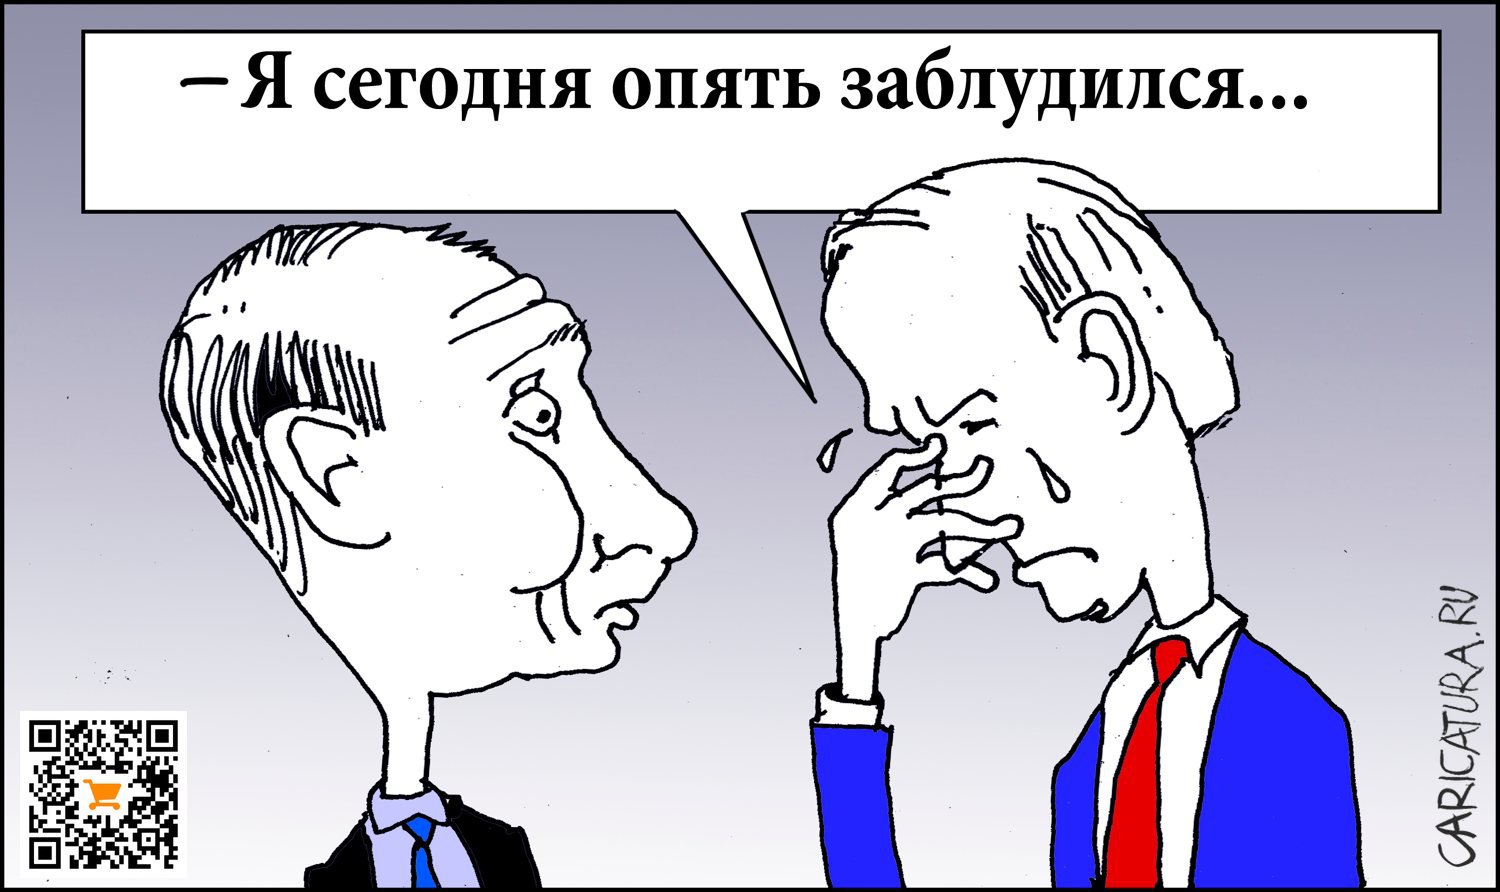 Карикатура "Заблуждение", Александр Уваров